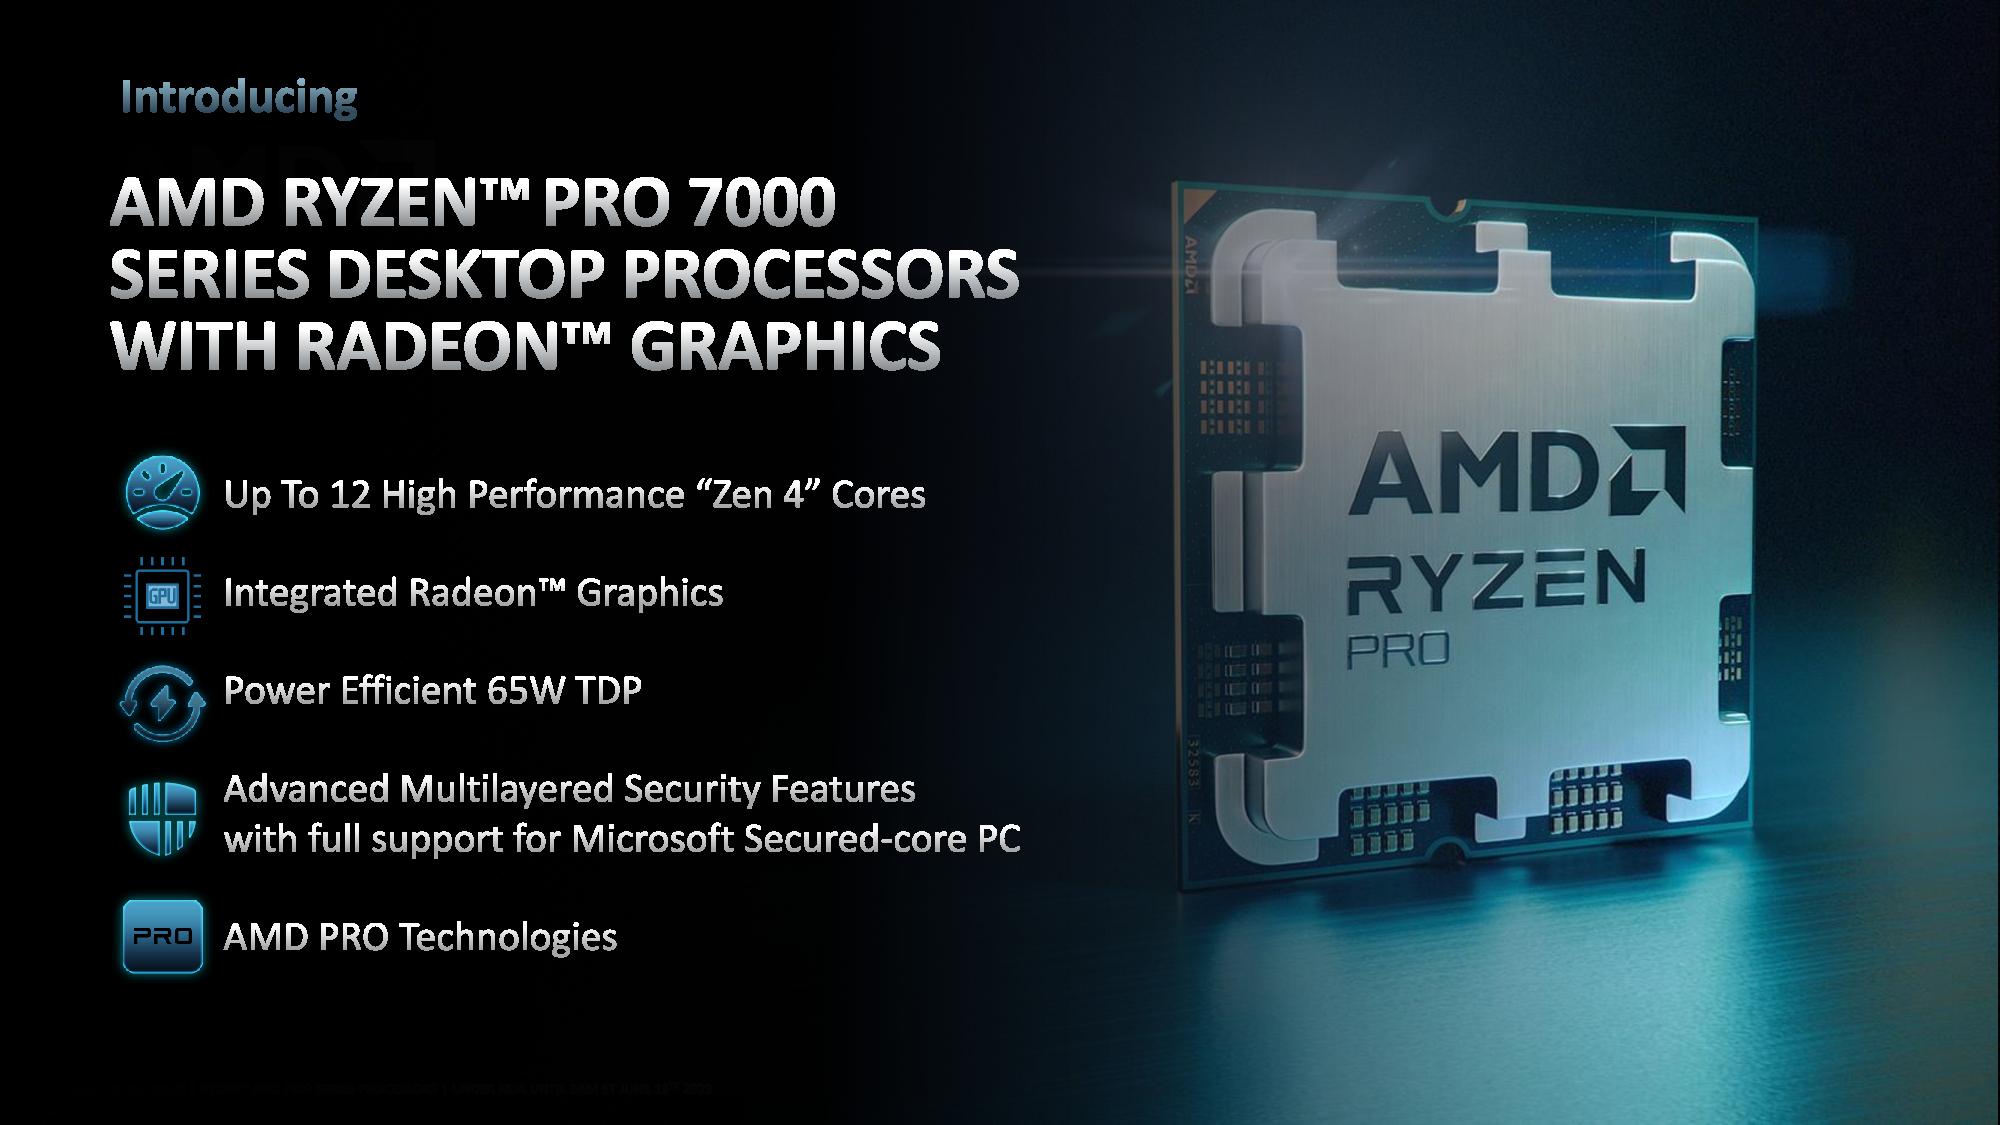 AMD Ryzen PRO 700